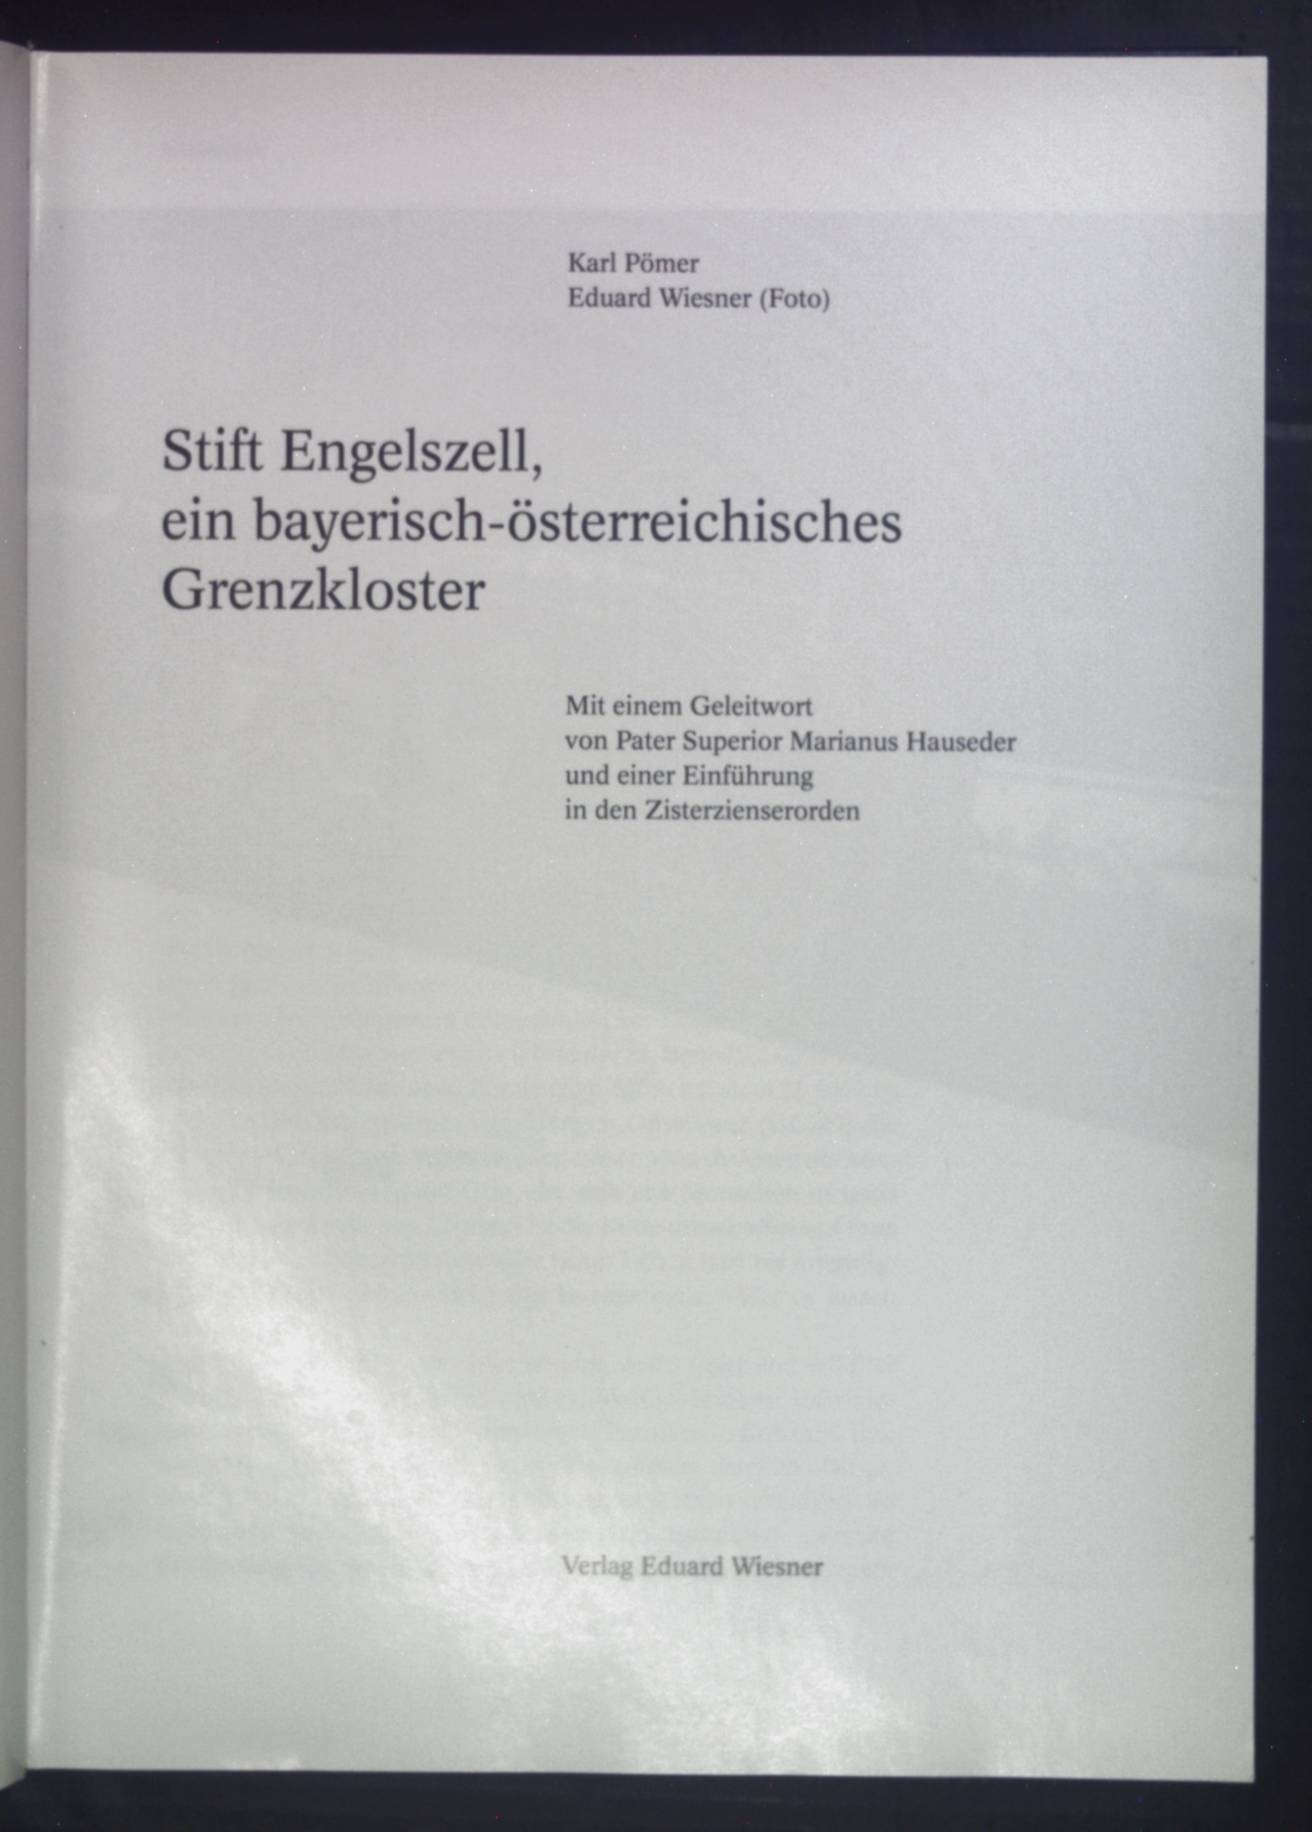 Stift Engelszell, ein bayrisch-österriechisches Grenzkloster. - Pömer, Karl und Eduard Wiesner